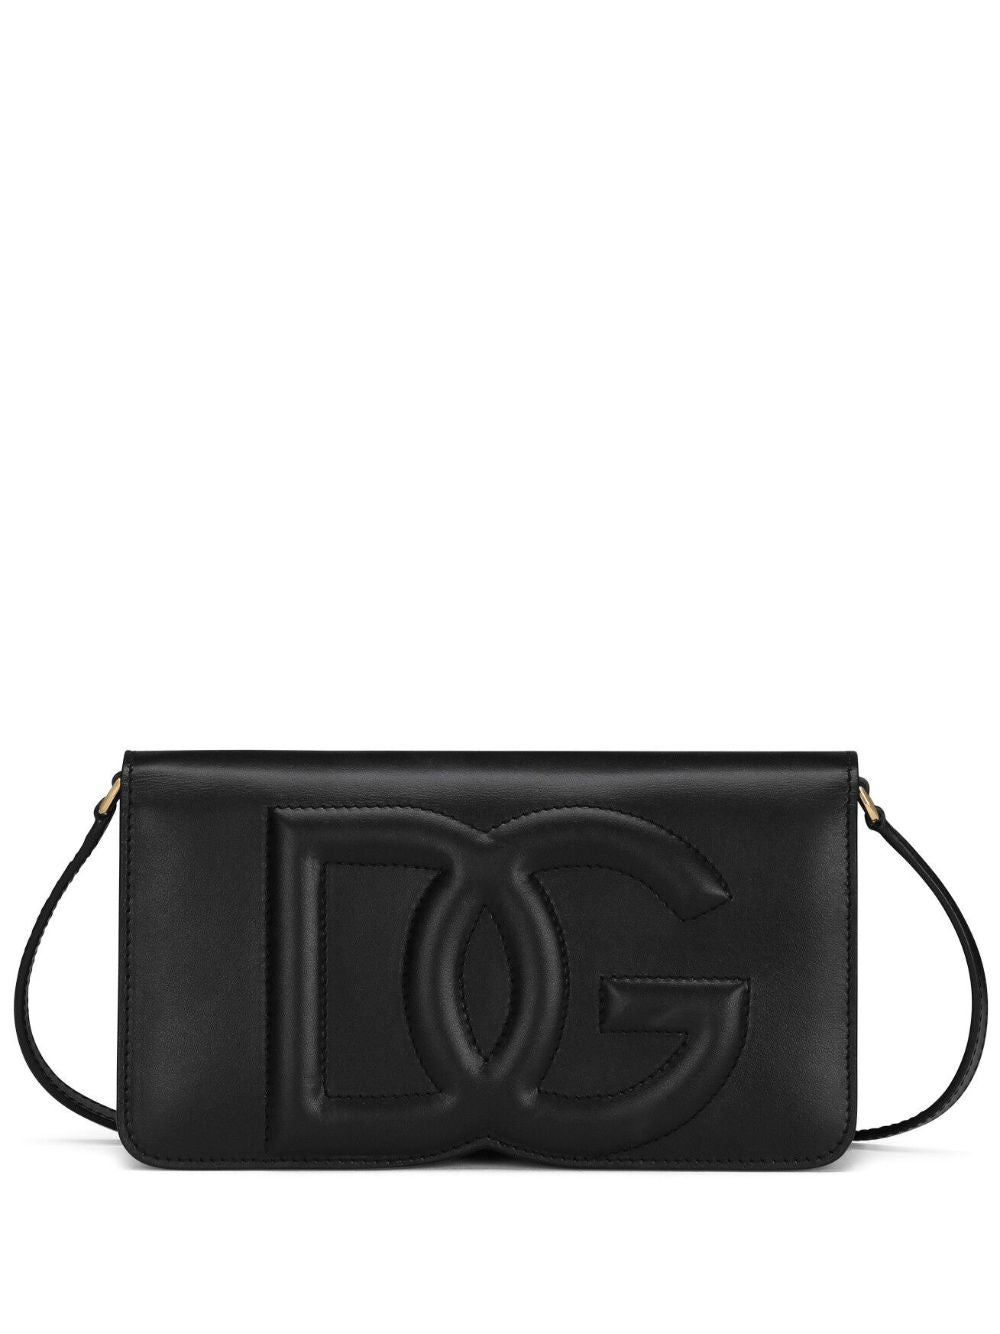 Shoulder bag with DG logo